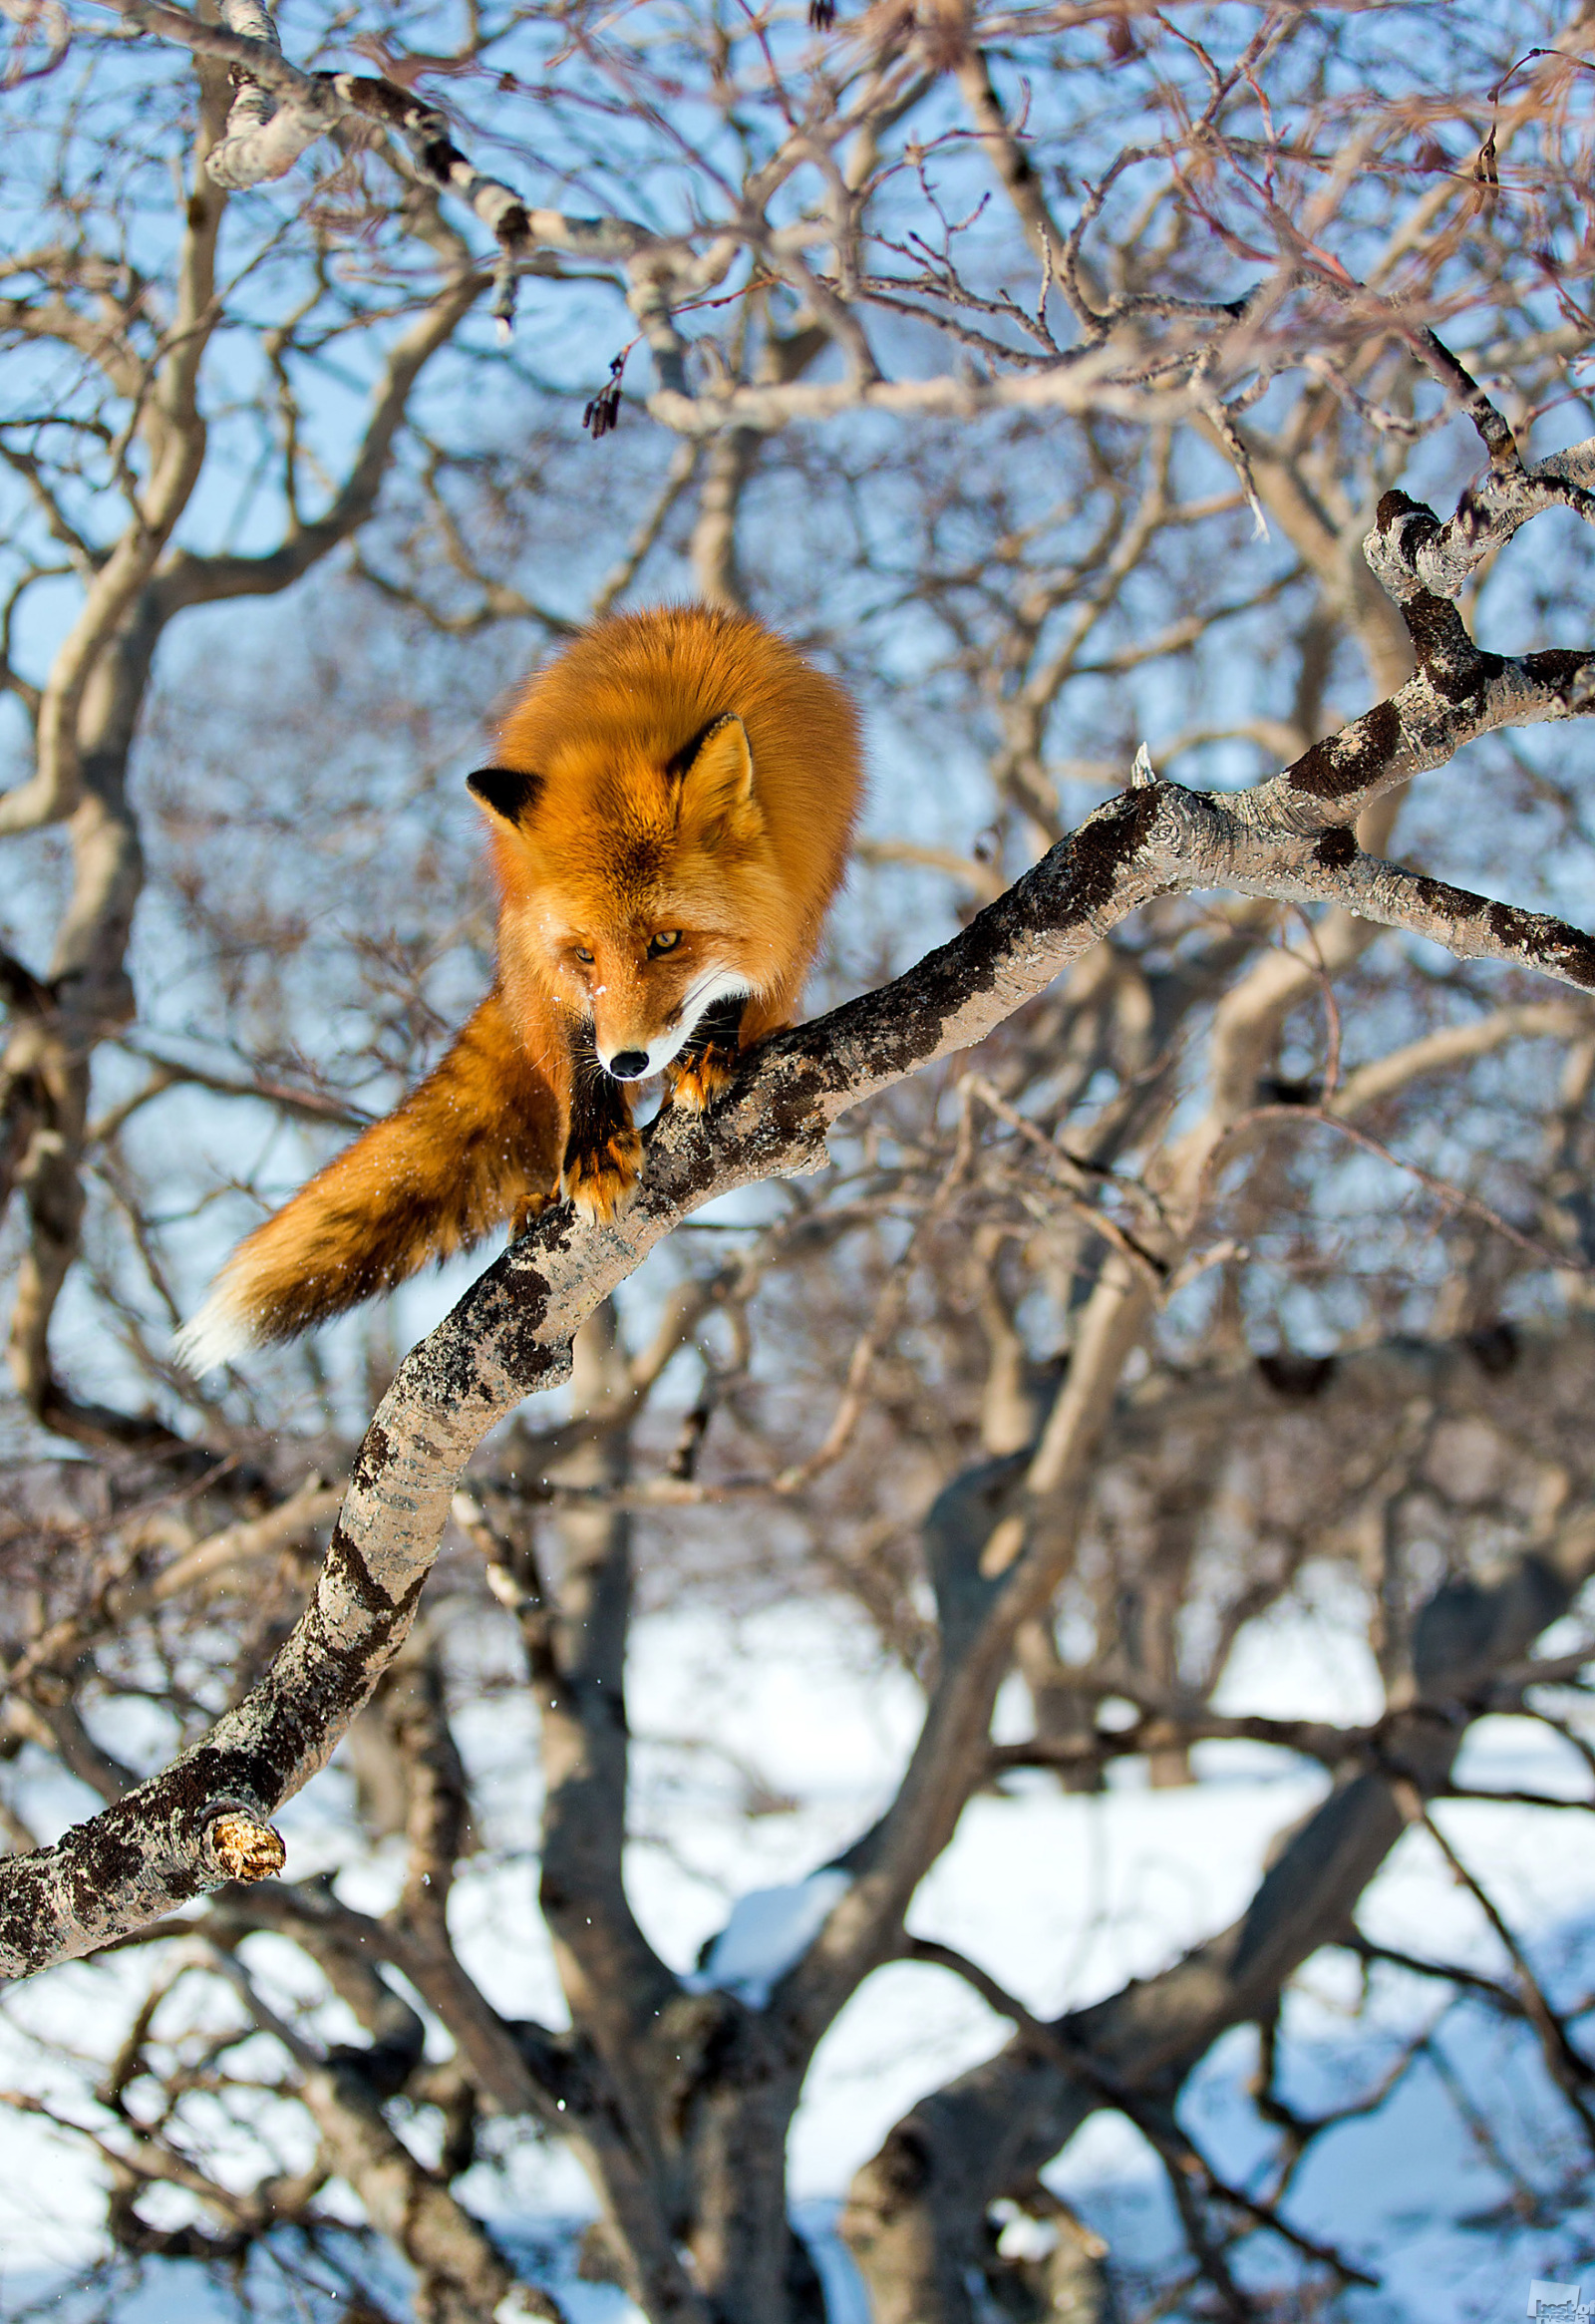 クロノツキー自然保護区、2013年3月。特に木が少し傾いていたり、枝が地面からあまり離れていない場合は、キツネは木に登ることができるようだ。このキツネが枝から枝へと飛躍することから判断すると、この行為はキツネにとって日常茶飯事であるに違いない。カムチャツカ地方、クロノツキー自然保護区